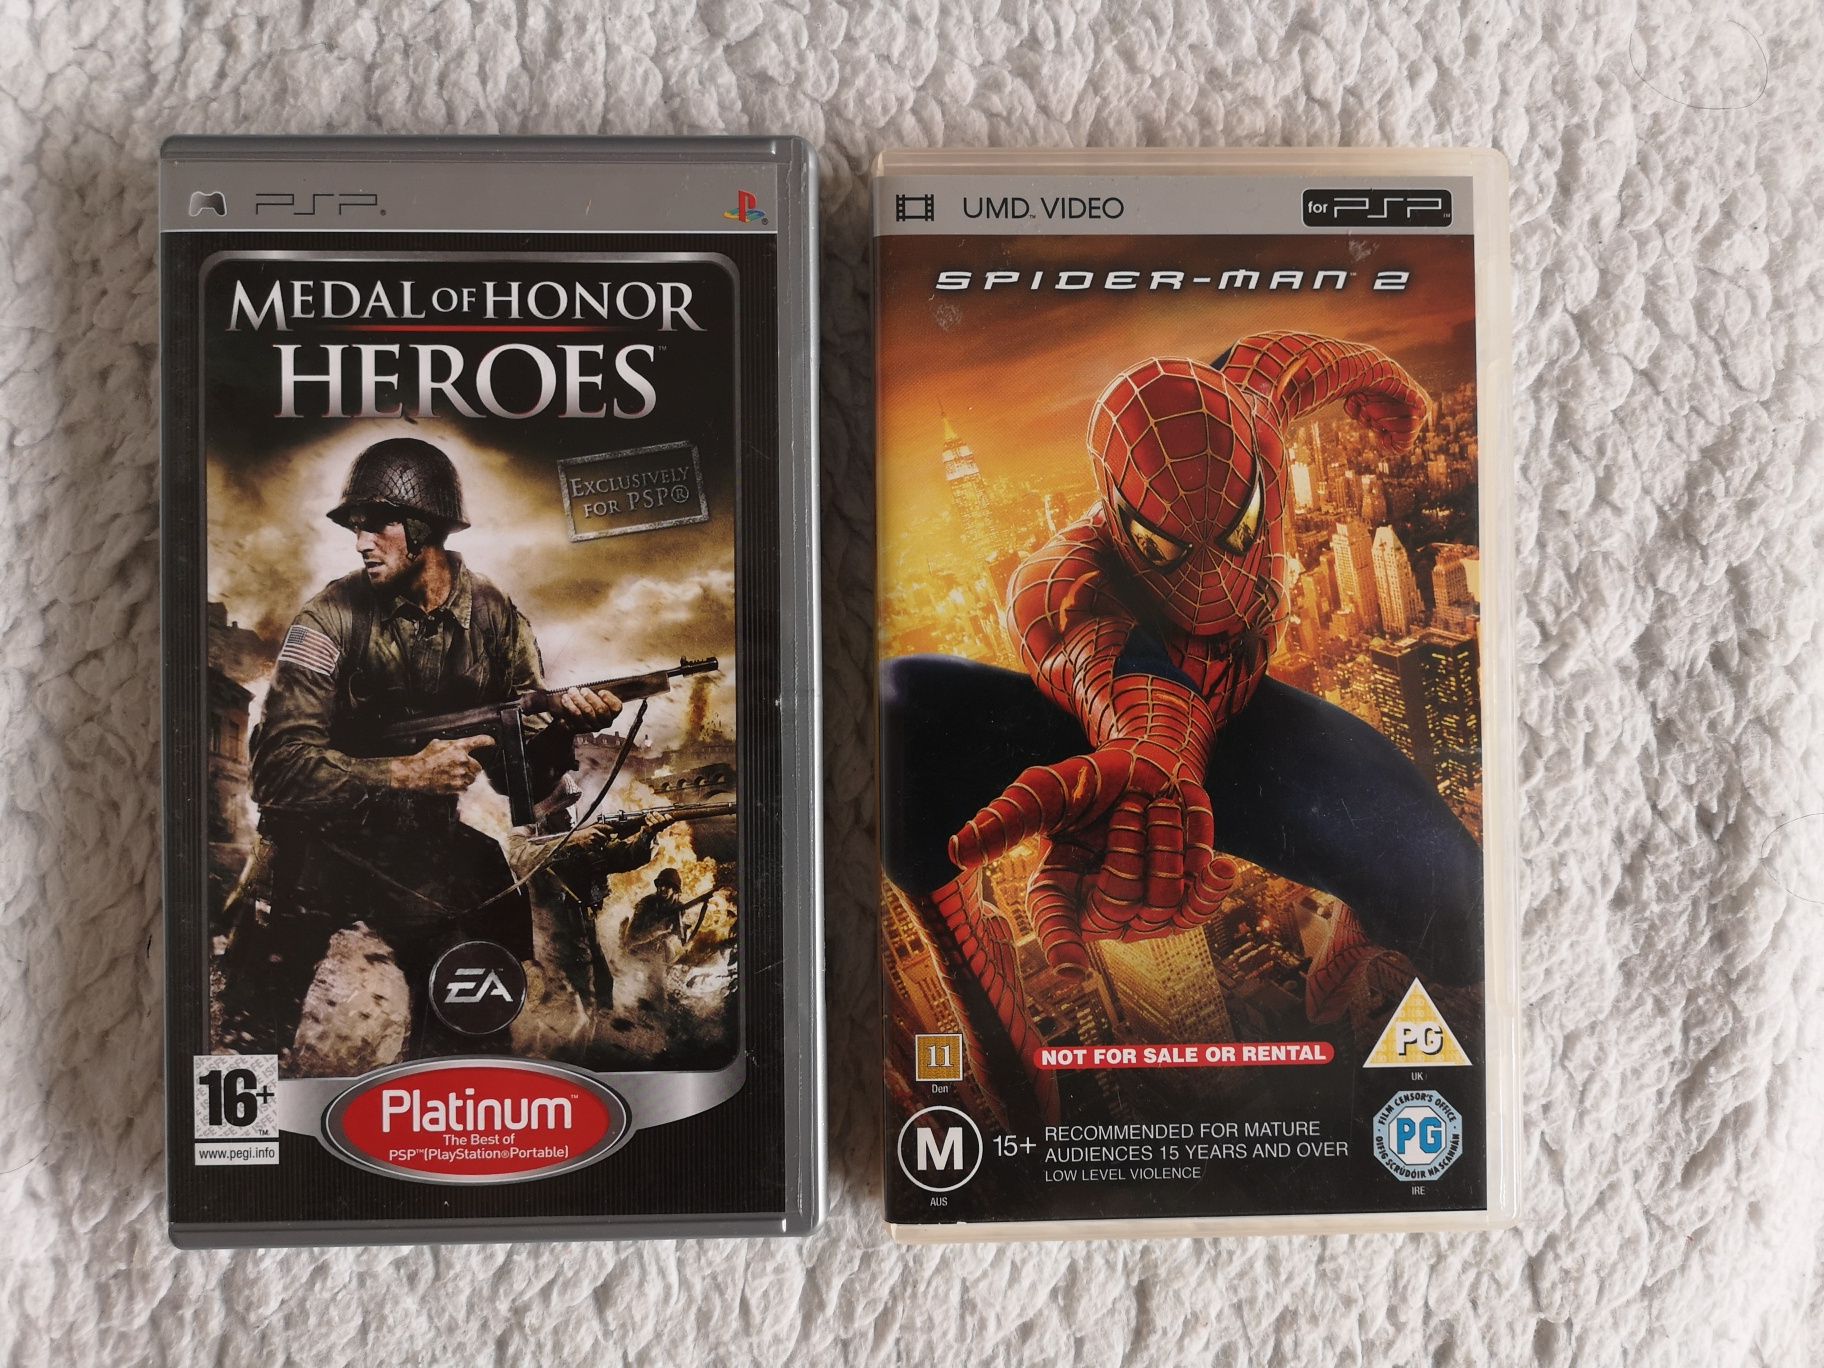 PSP playstation pakiet medal of honor heroes plus spiderman 2 film